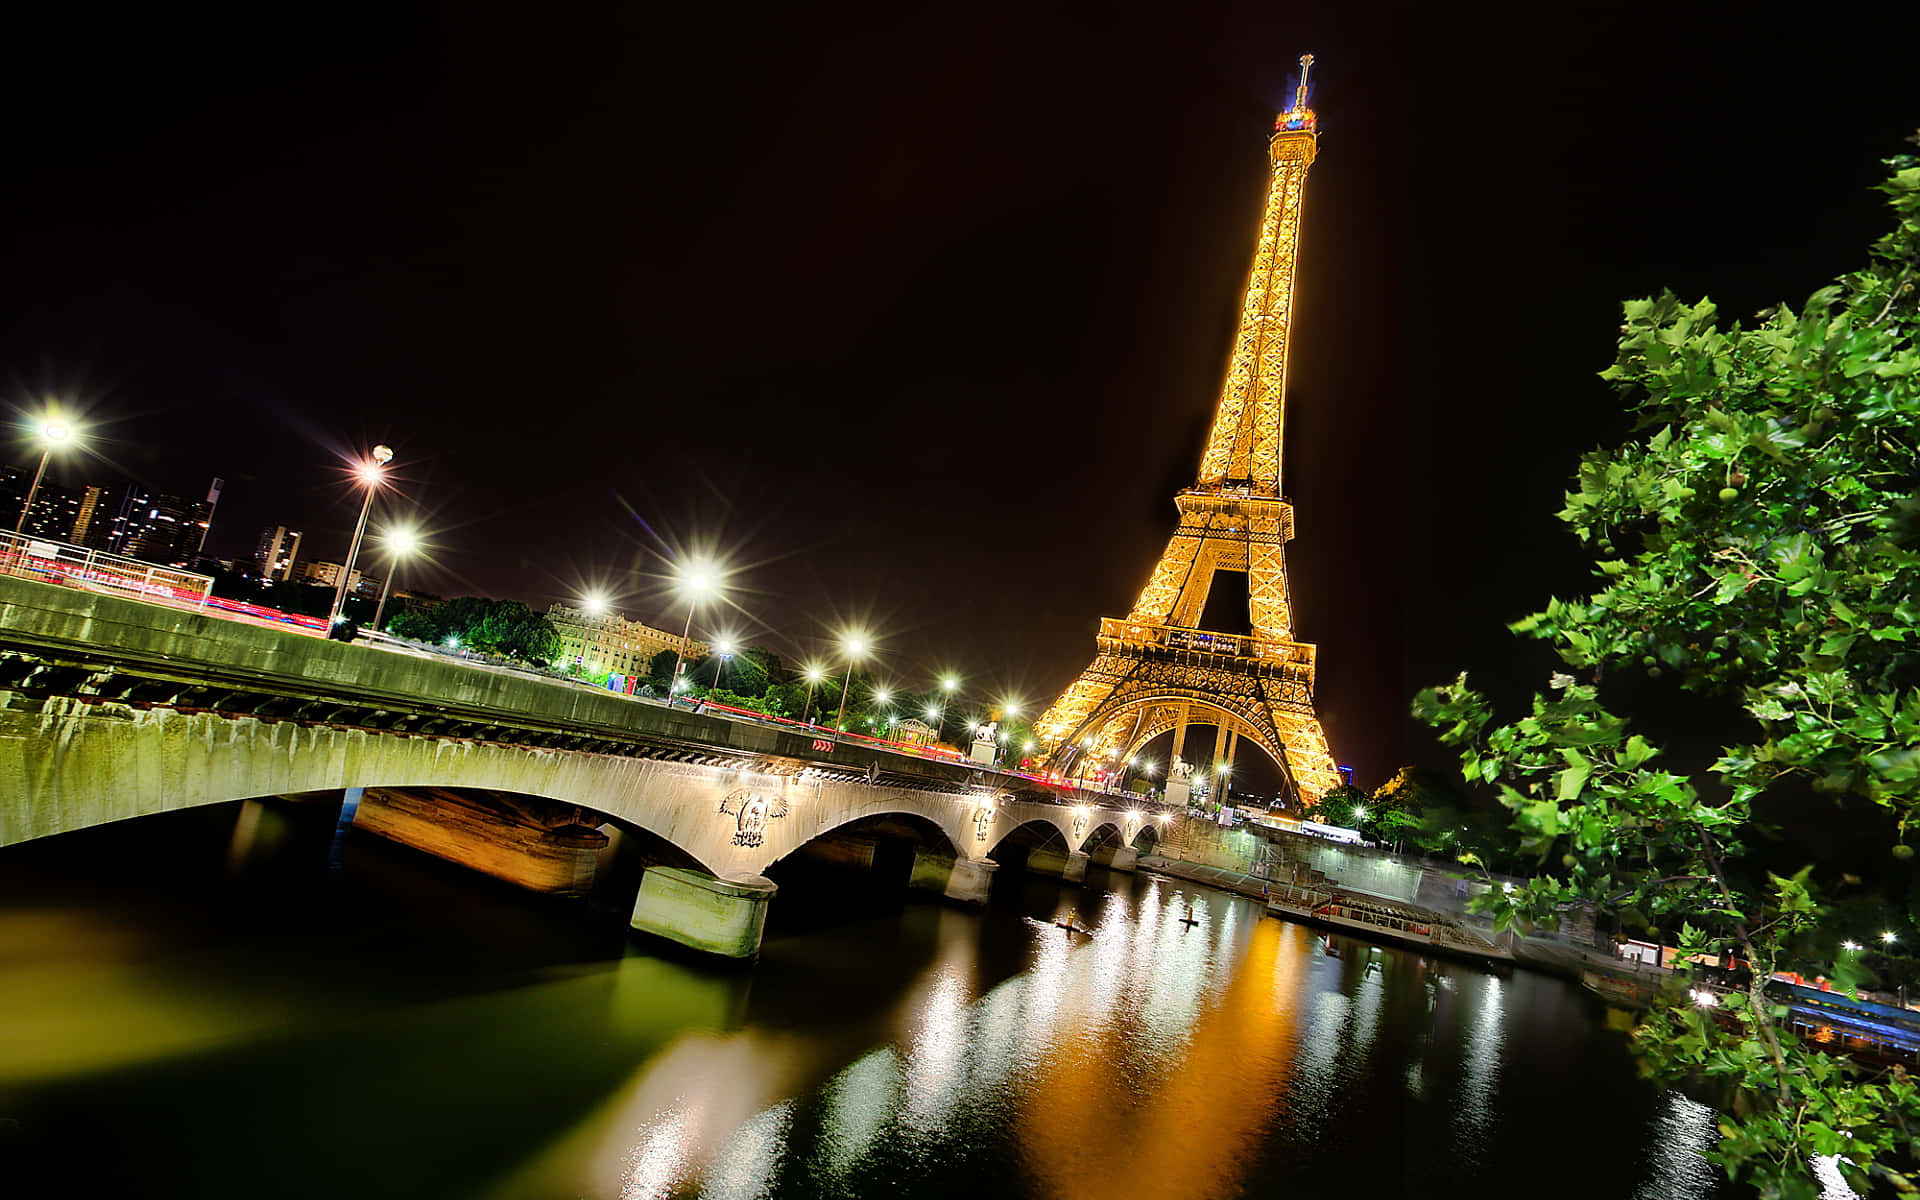 Coolalandskapsbilder Av Eiffeltornet På Natten.